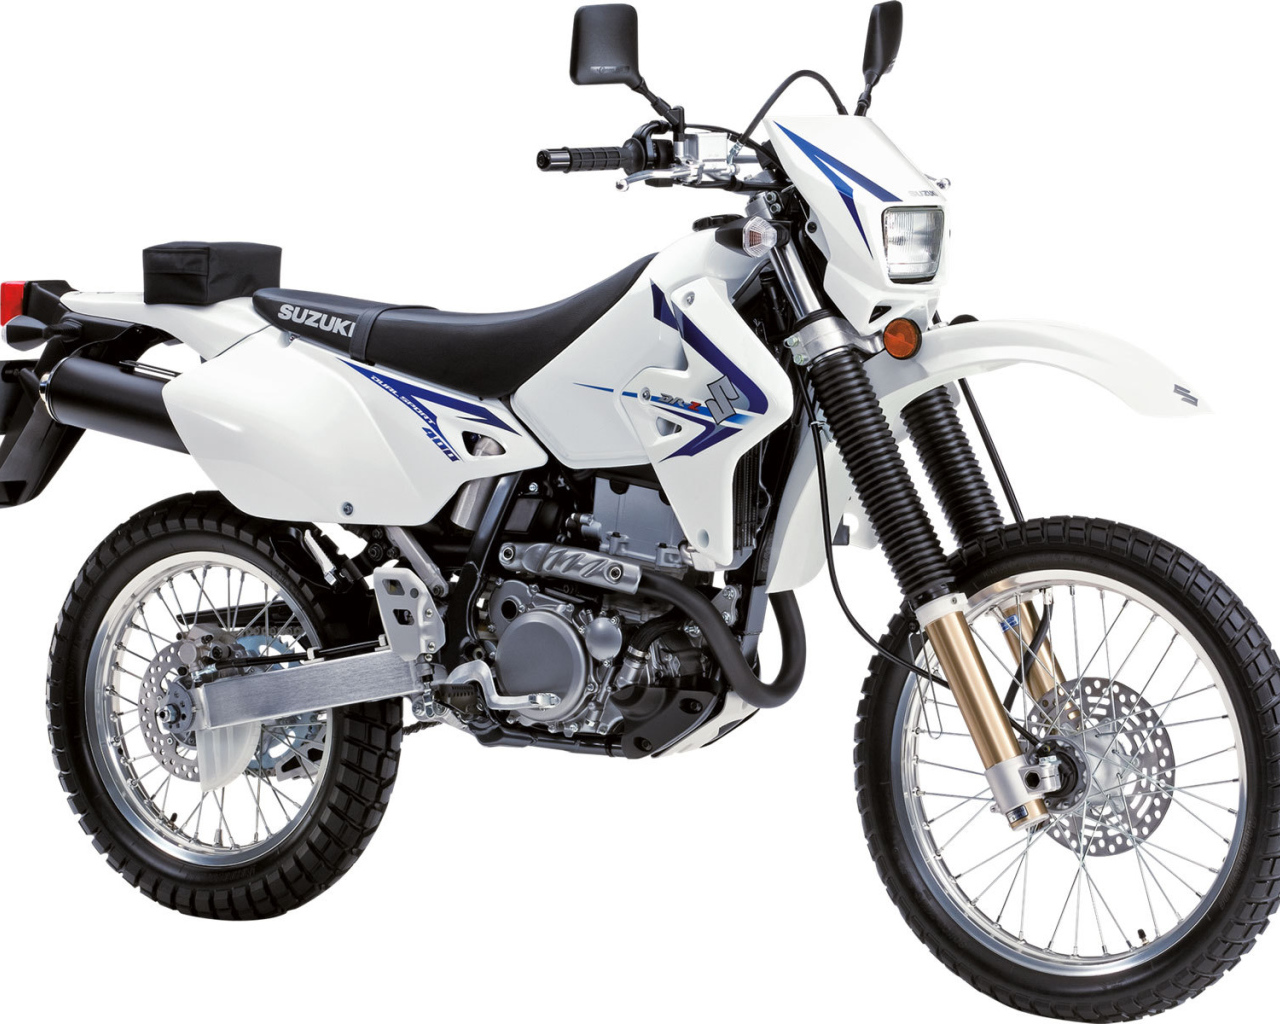 Тест-драйв мотоцикла Suzuki  DR-Z400 S